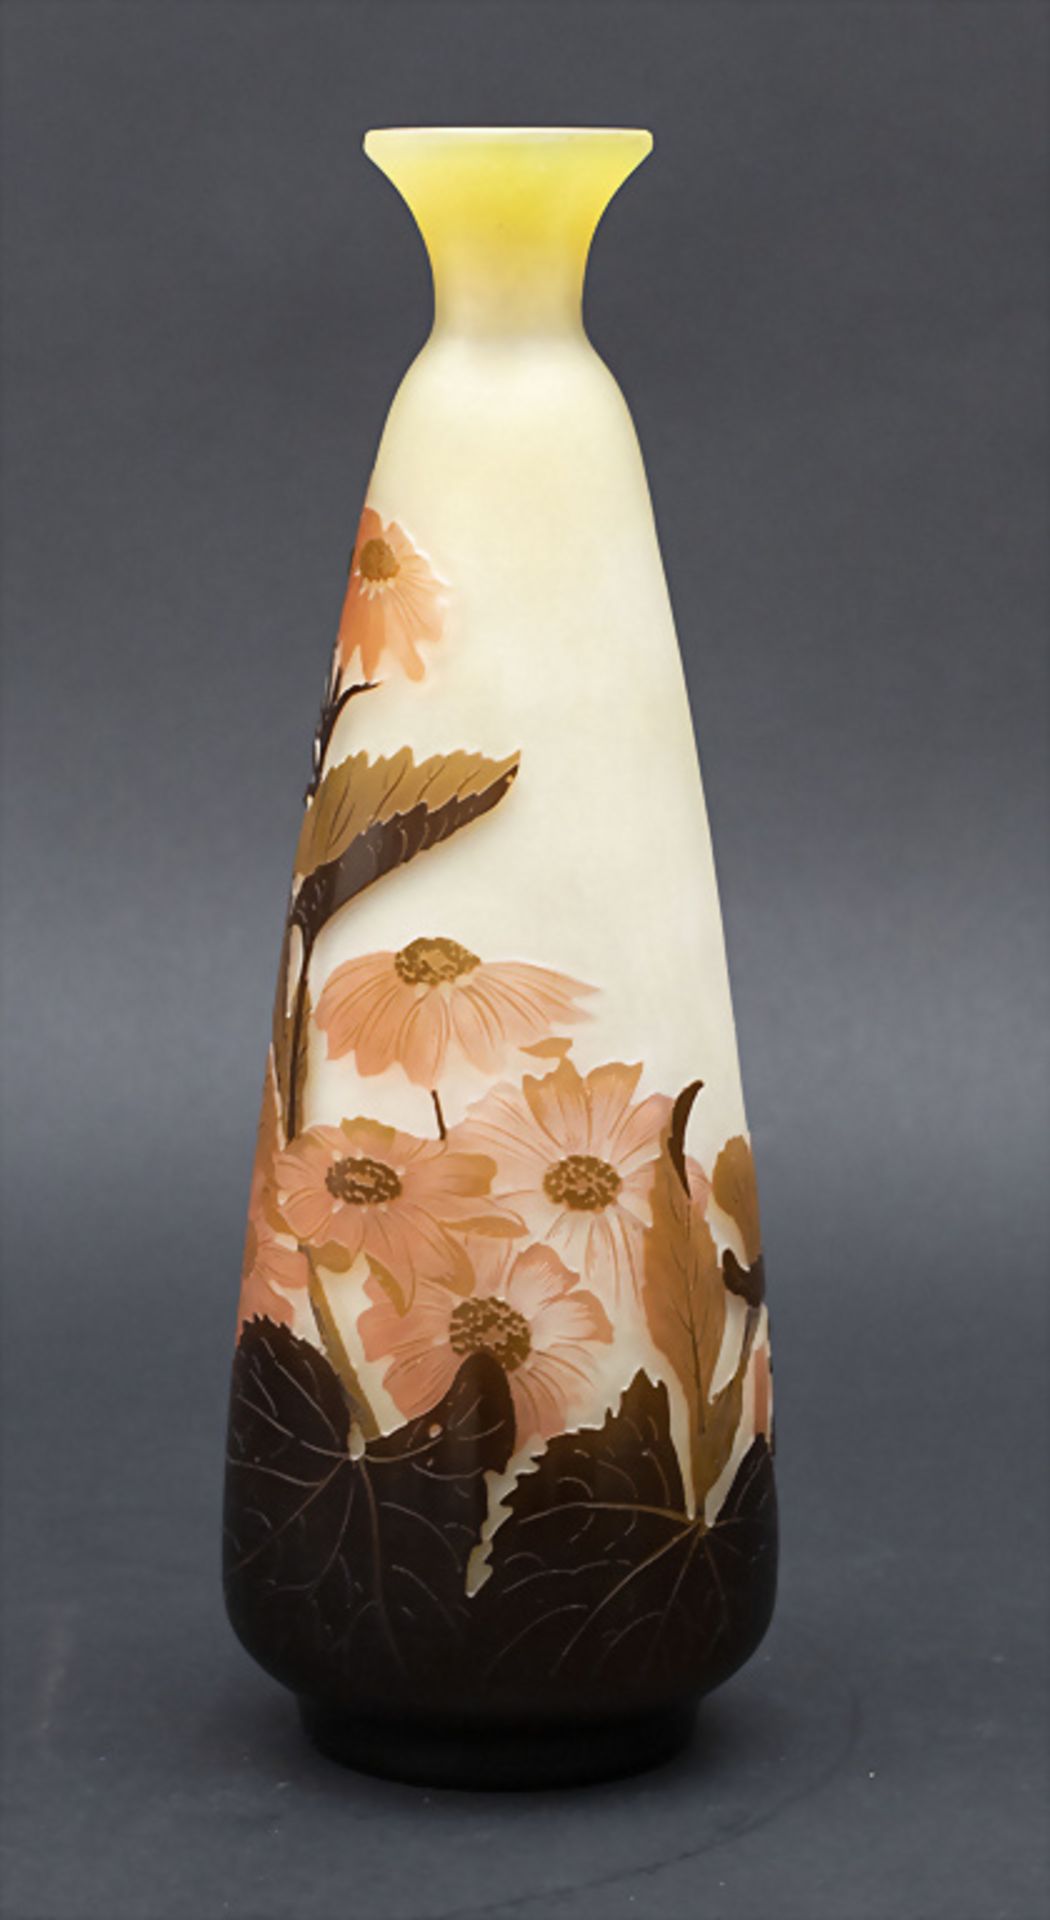 Jugendstil Vase mit Anemonen / An Art Nouveau vase with anemones, Emile Gallé, Ecole de Nancy, ... - Bild 2 aus 8